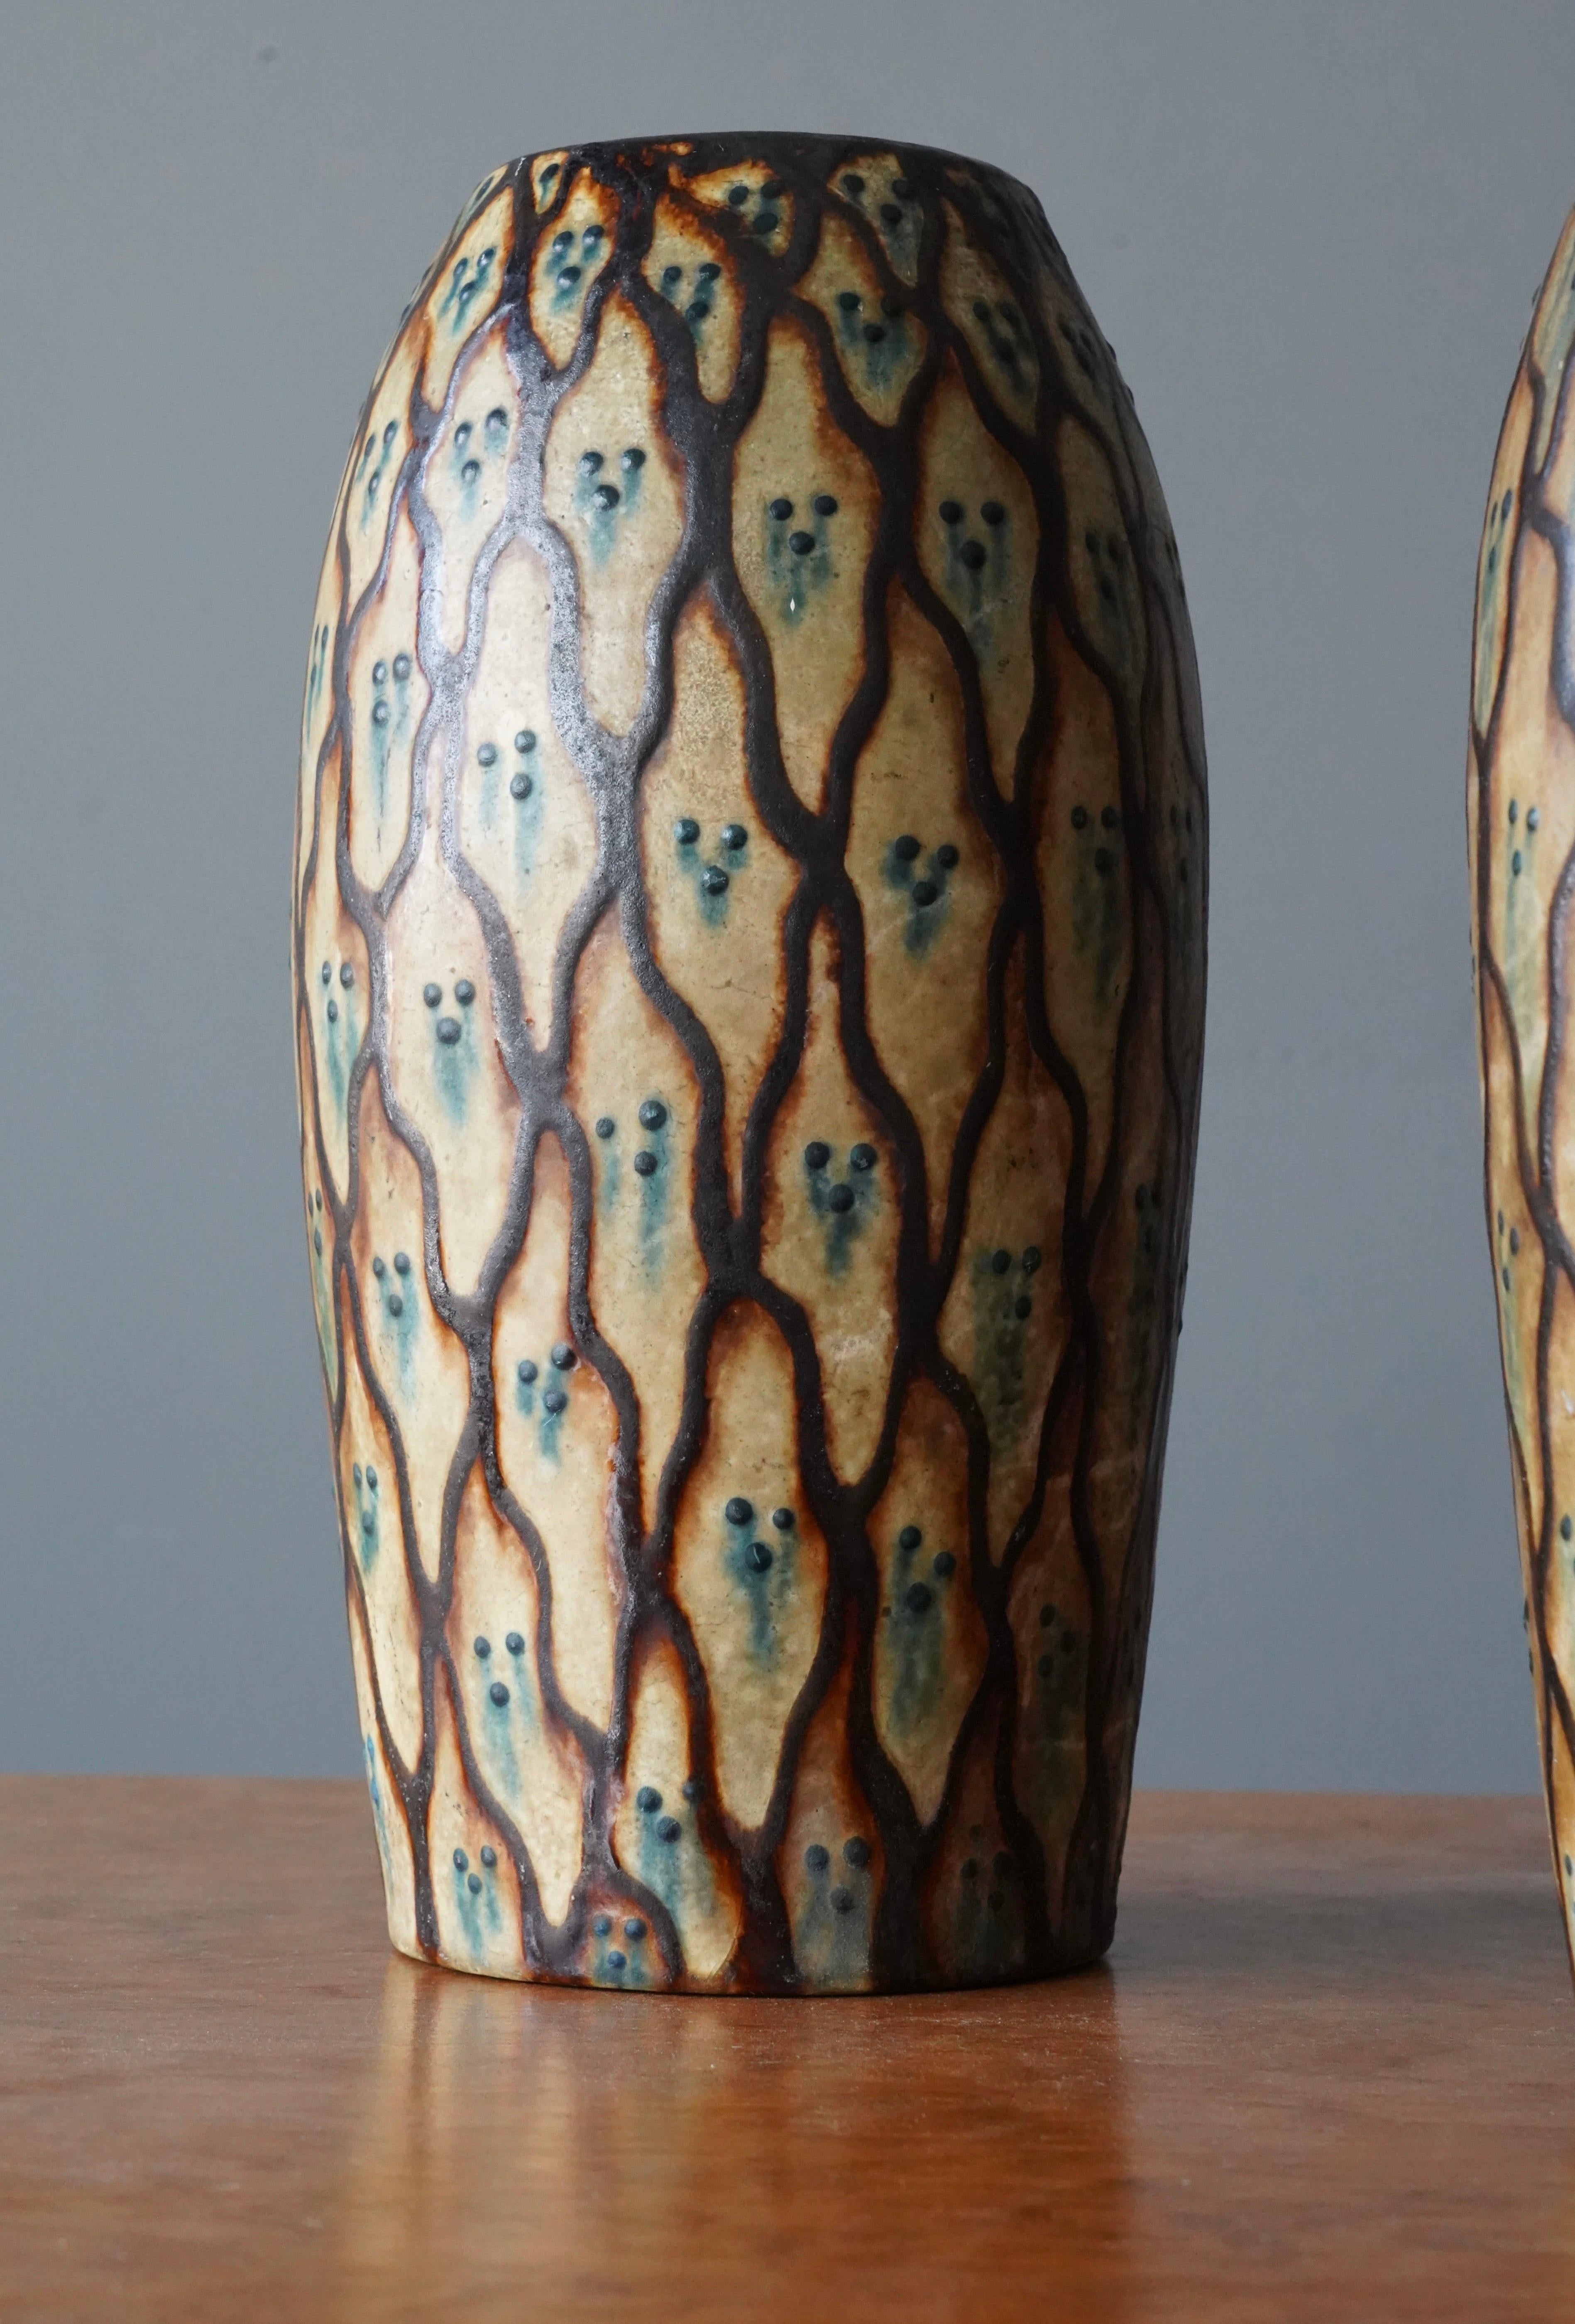 Scandinavian Modern Danish Potter, Vases, Painted Glazed Ceramic, Denmark, c. 1930s